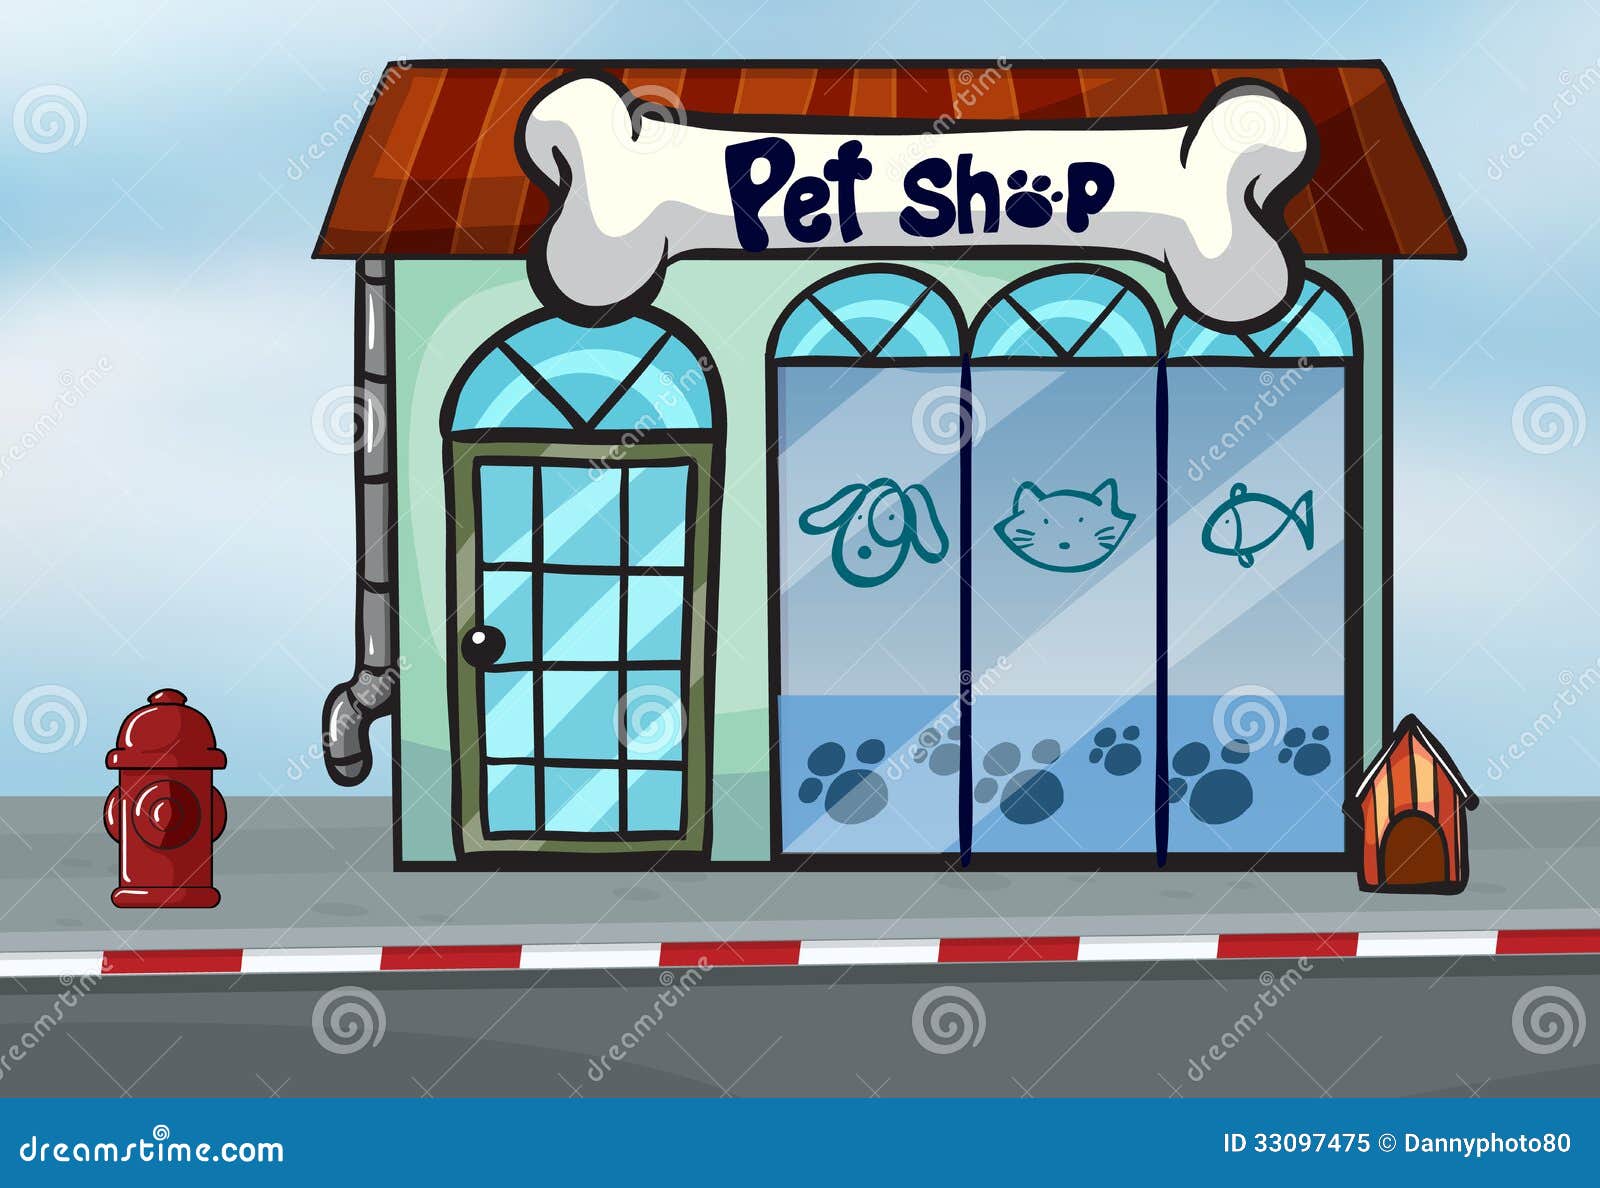 free clip art pet shop - photo #5